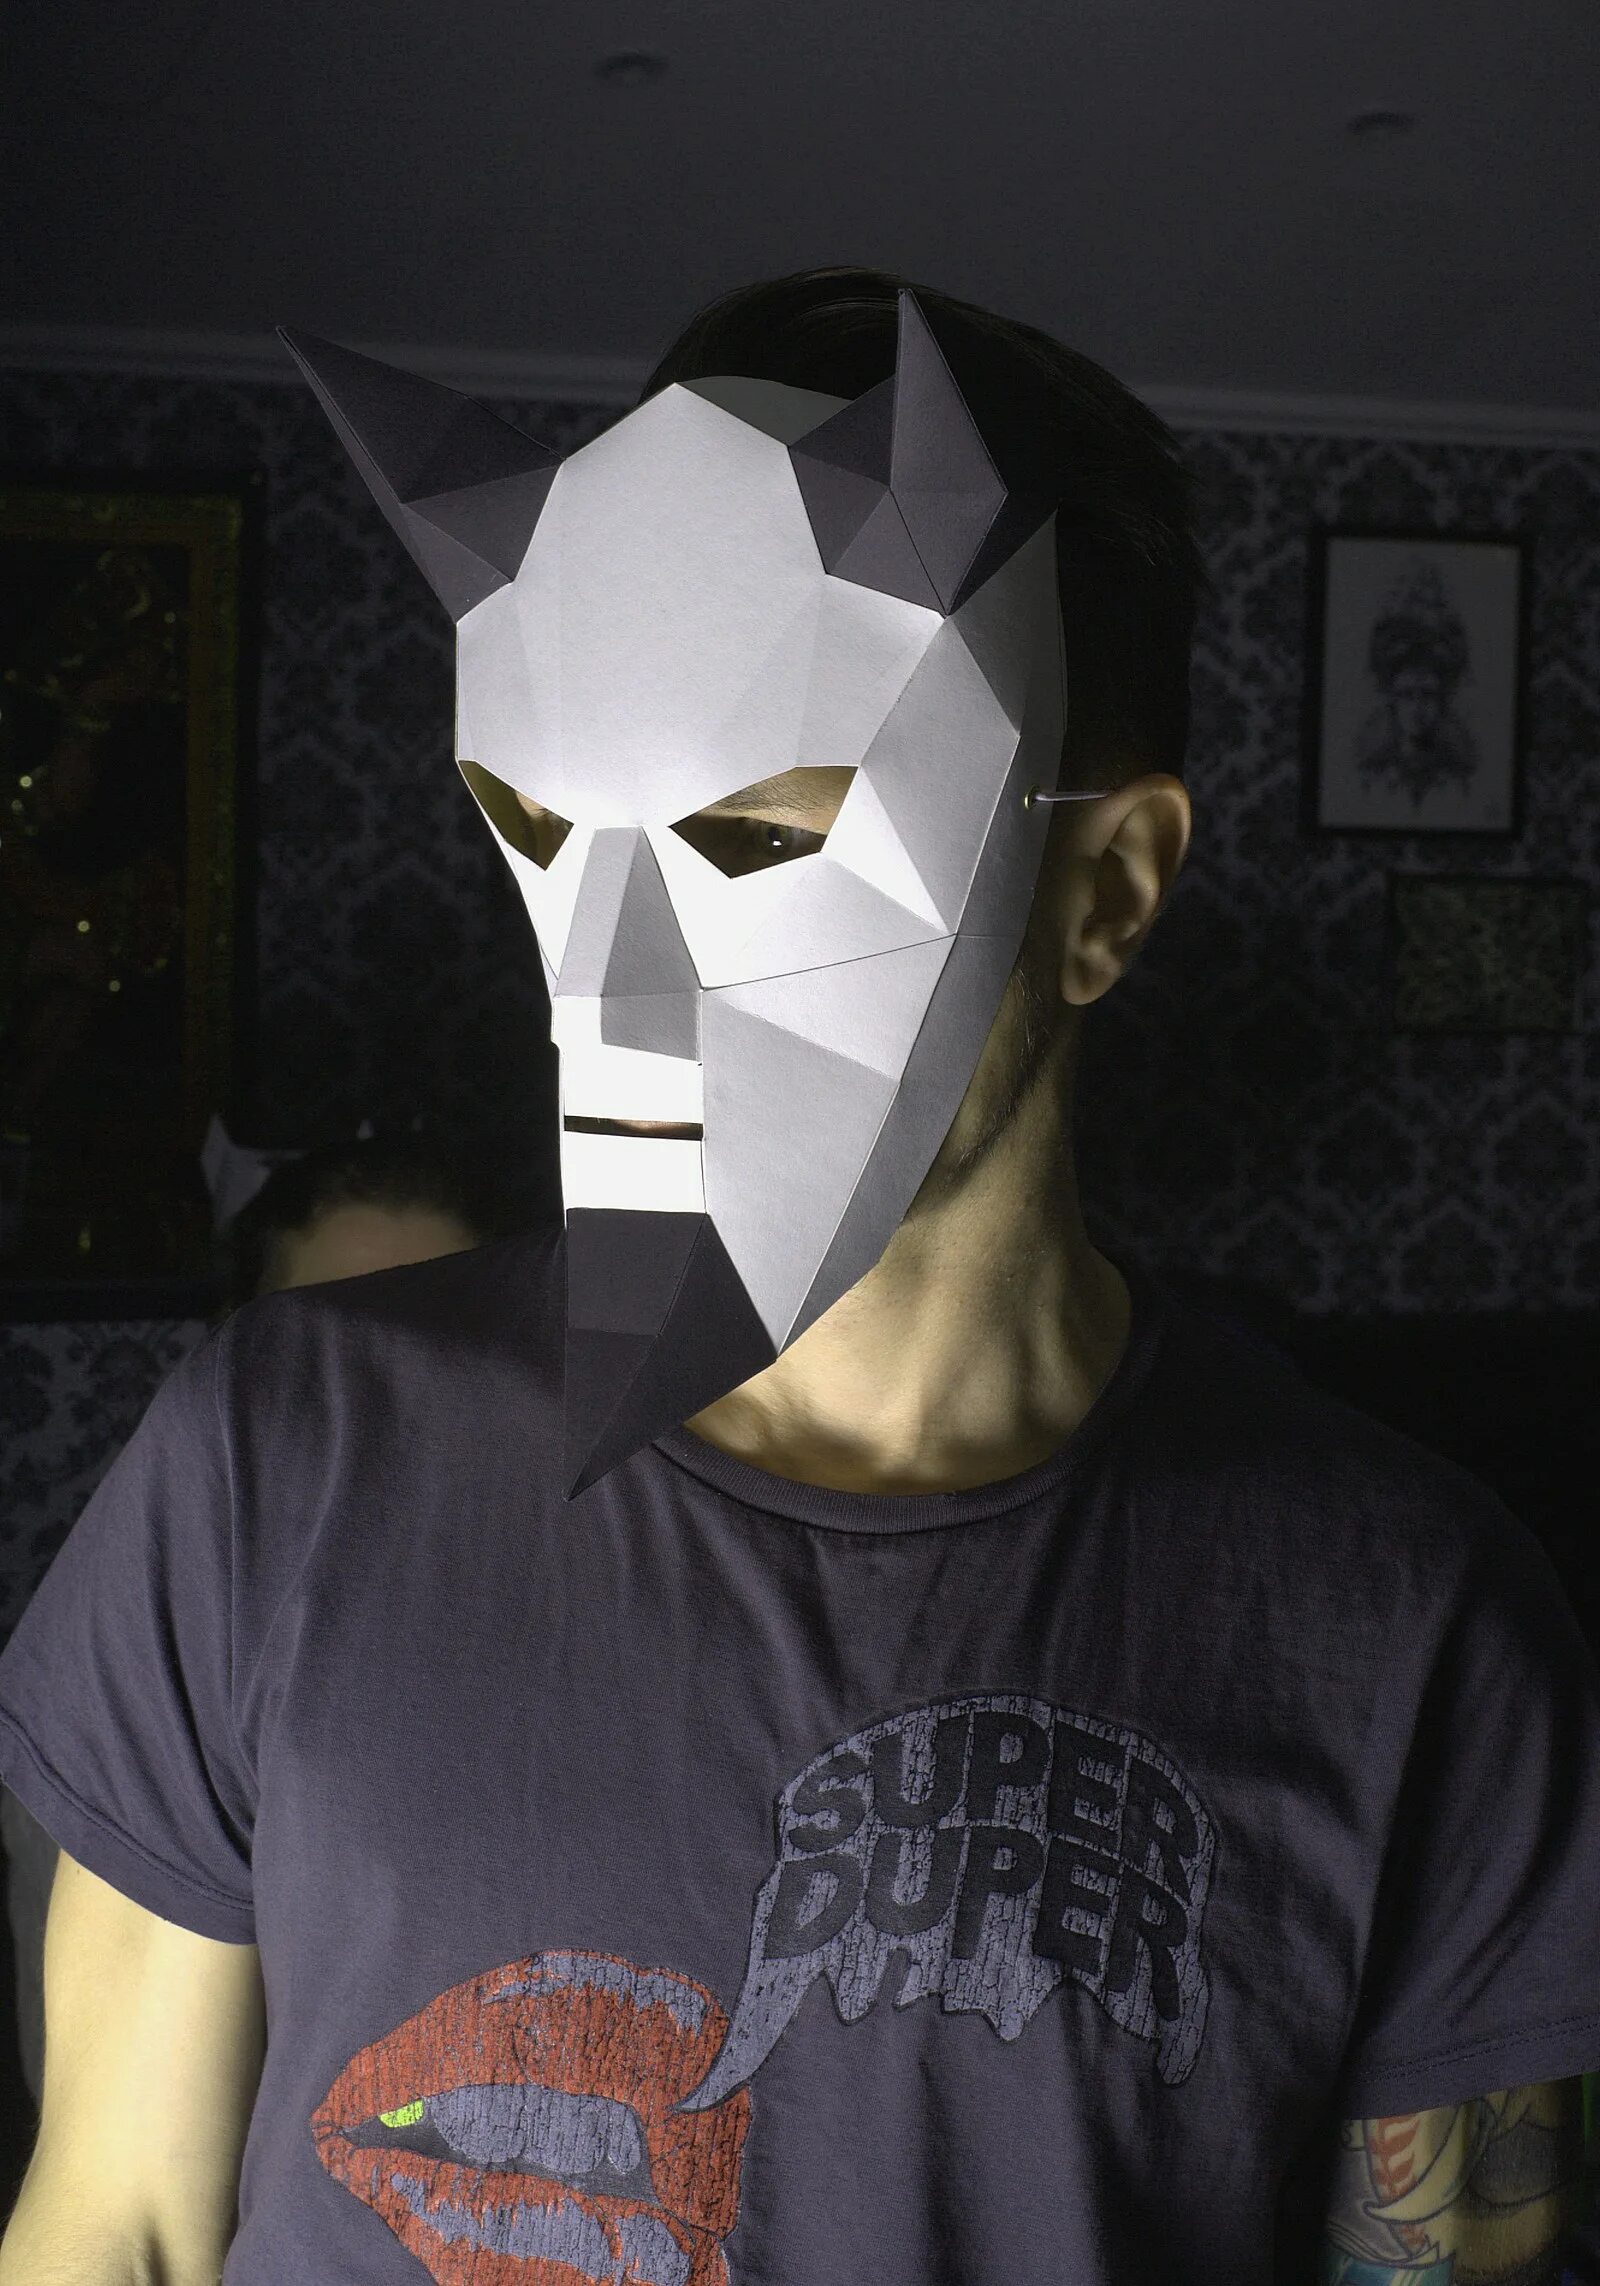 Original маска. Объемная маска. Маска из картона. Объемная маска из бумаги. Самодельная маска из бумаги.